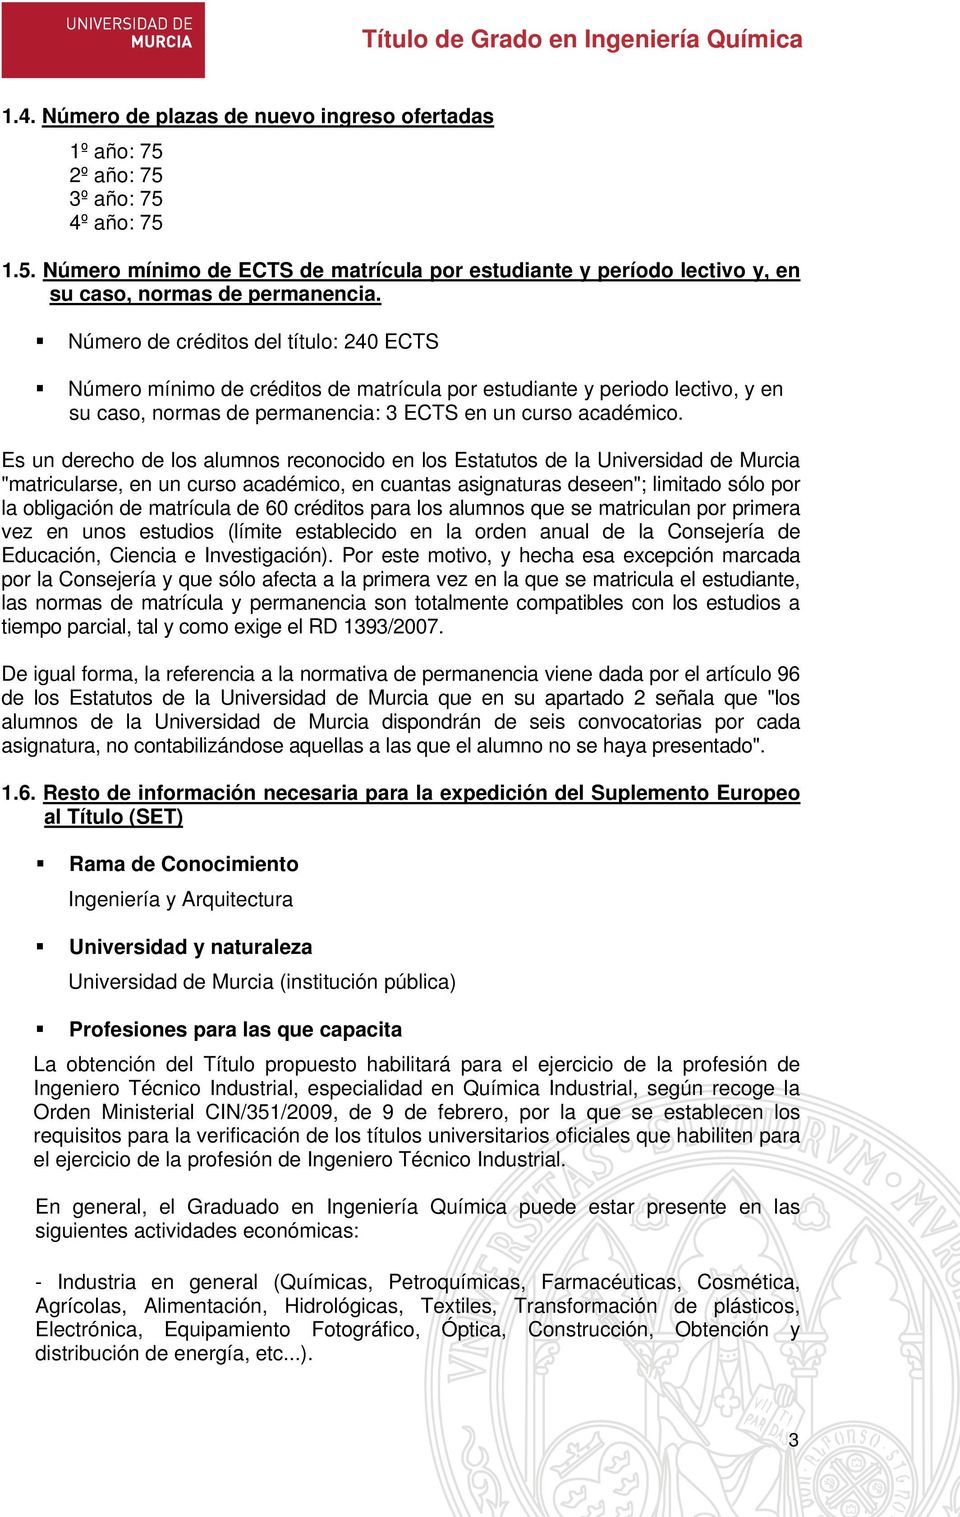 Es un derecho de los alumnos reconocido en los Estatutos de la Universidad de Murcia "matricularse, en un curso académico, en cuantas asignaturas deseen"; limitado sólo por la obligación de matrícula